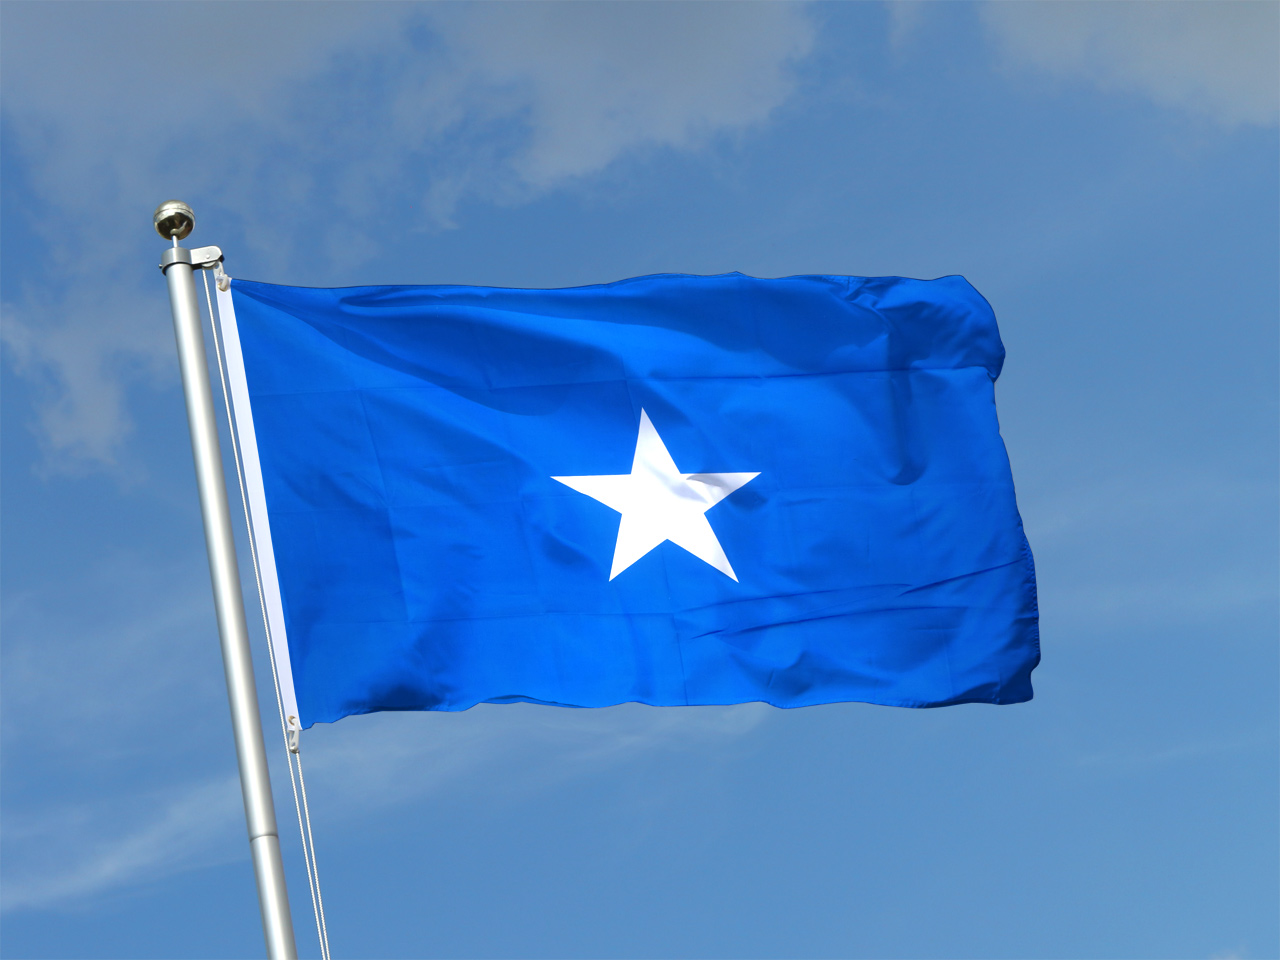 Fahne Somalia Flagge somalische Hissflagge 90x150cm 